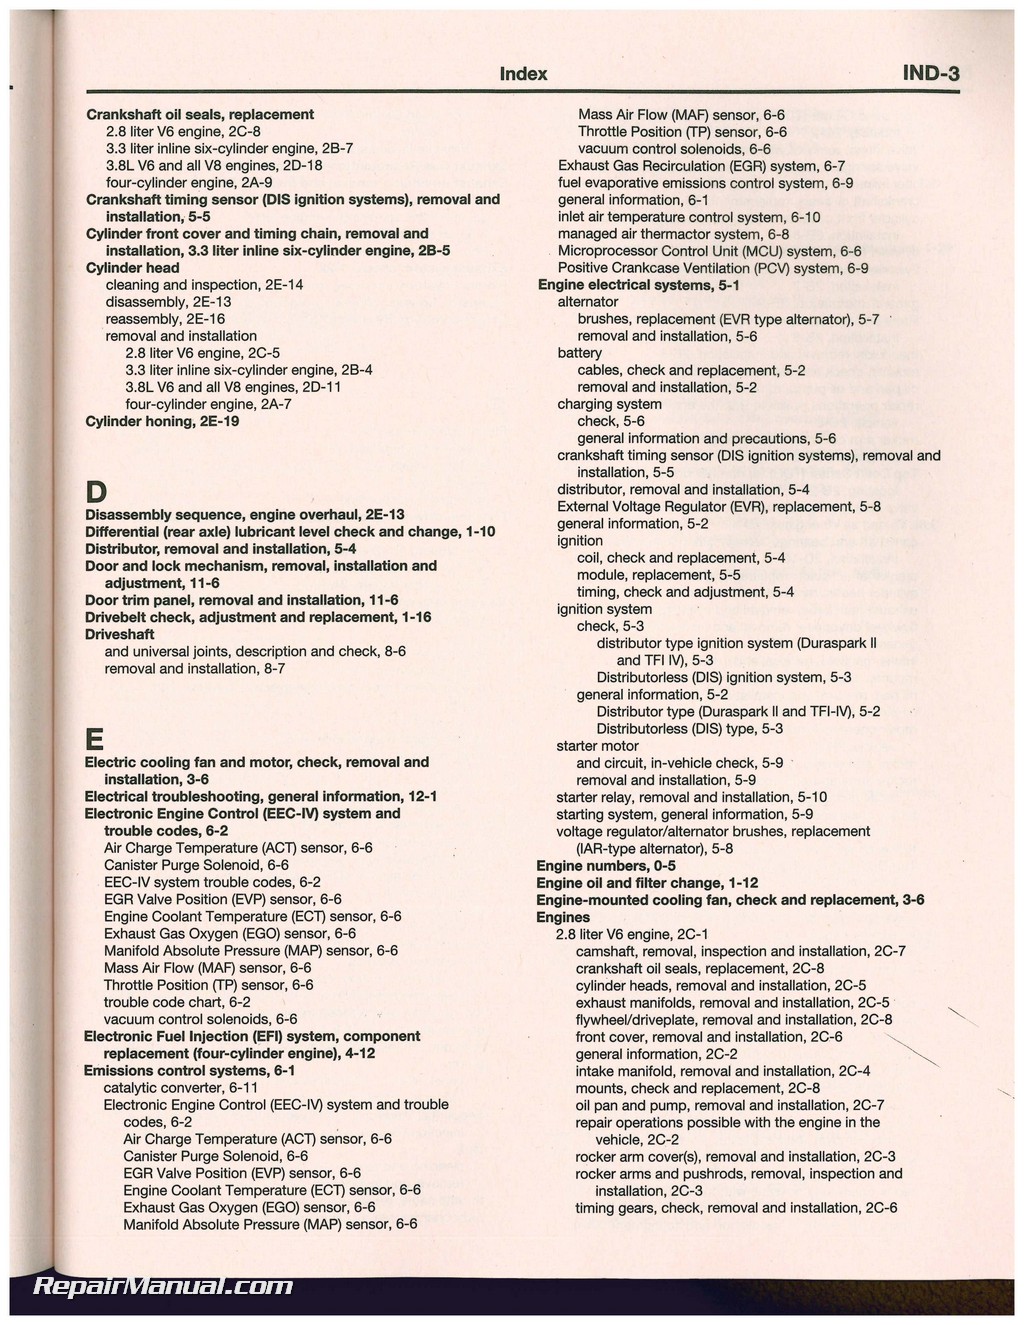 1987 Ford mustang repair manual #3